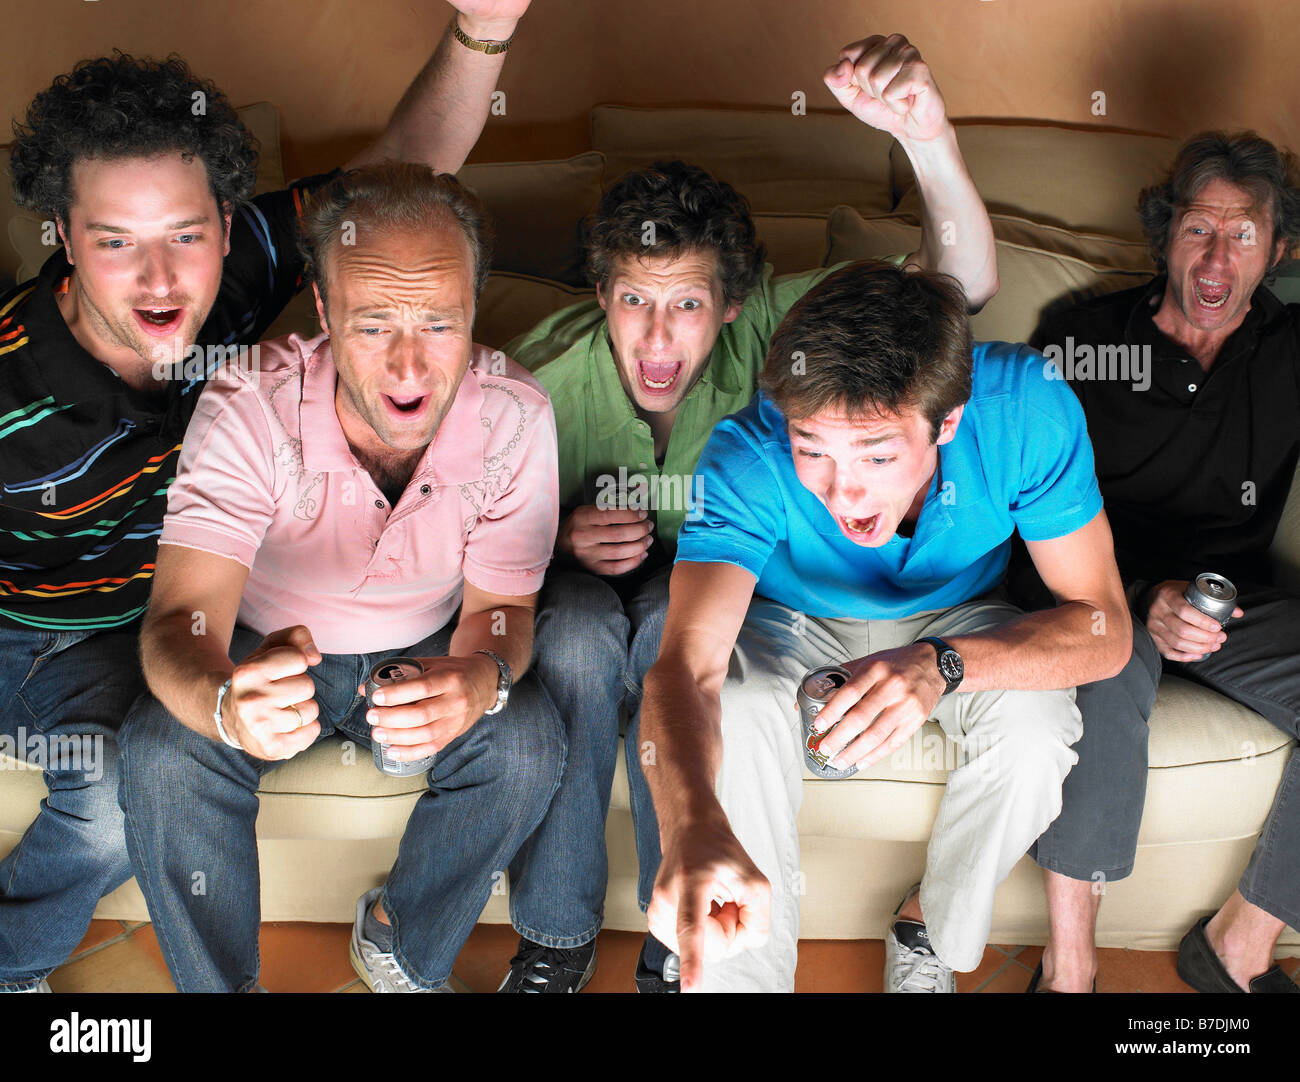 Les hommes à regarder la télévision, holding beers Banque D'Images